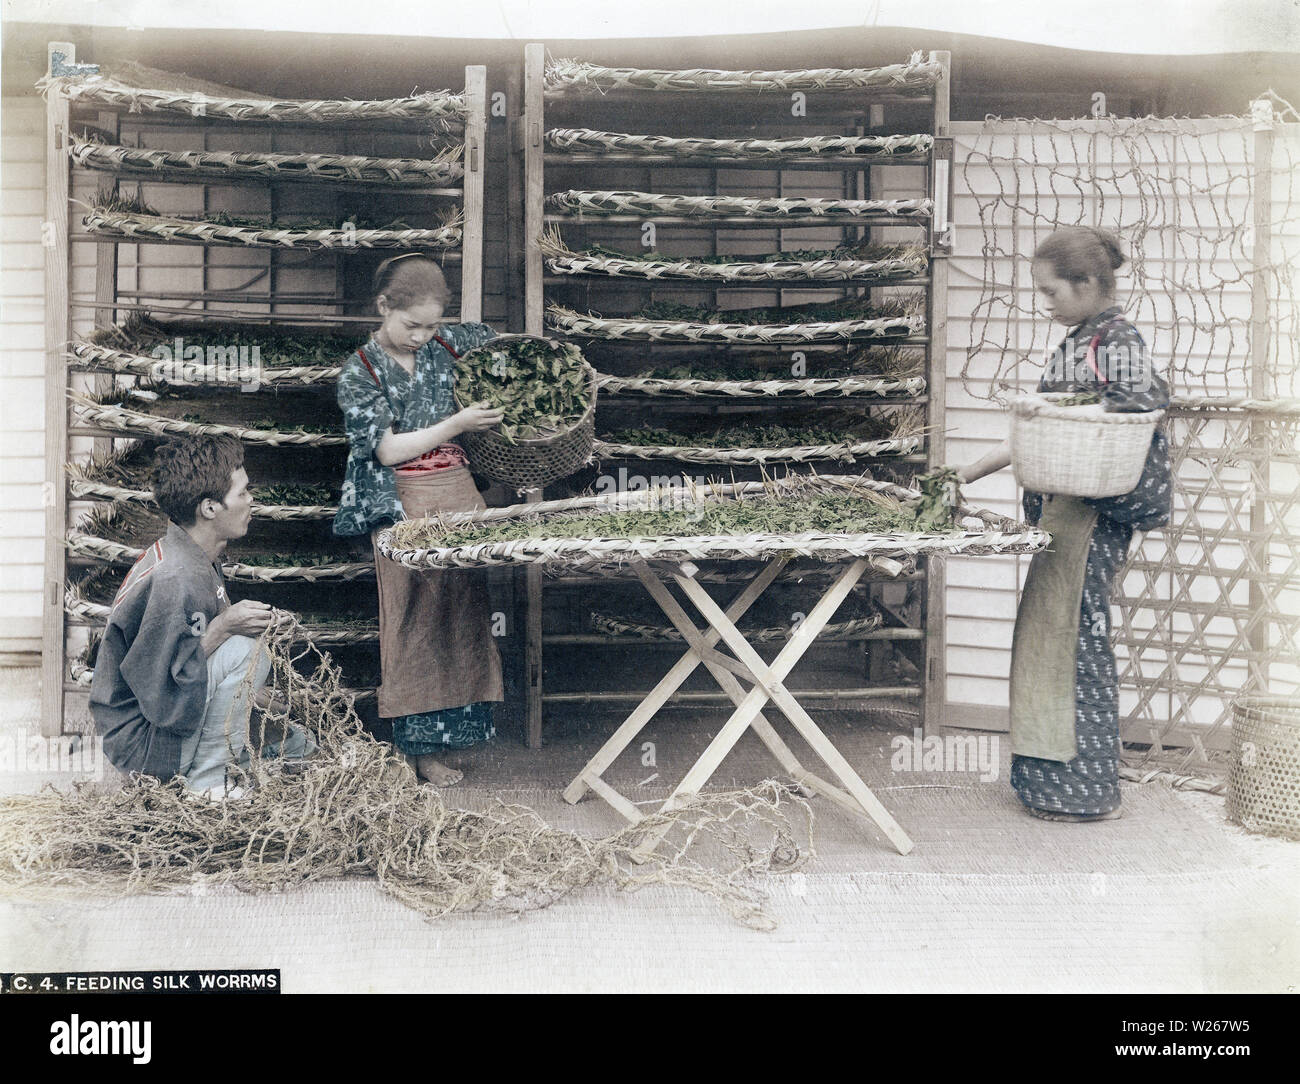 [1880s Japan - Japanische Frauen Fütterung Seidenraupen] - Zwei Frauen feed Seidenraupen mit maulbeerblättern. 19 Vintage albumen Foto. Stockfoto